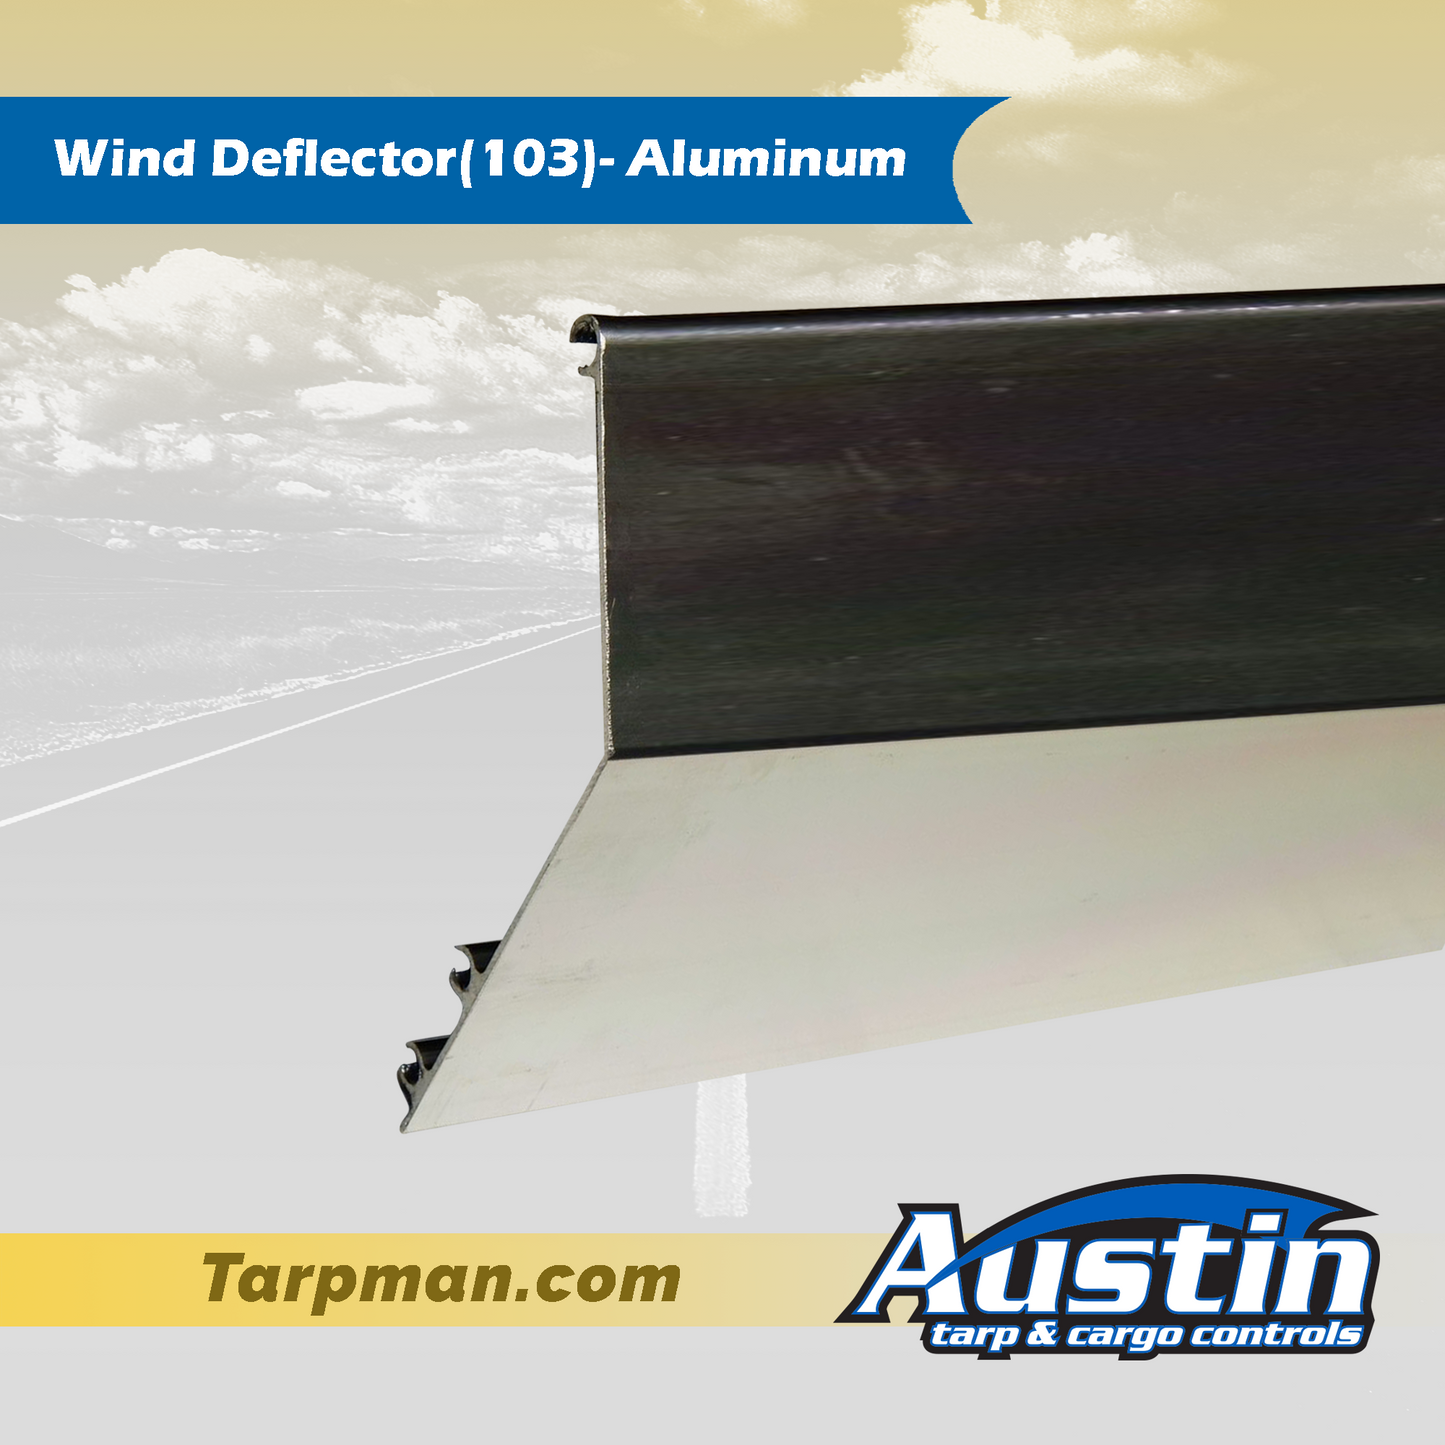 Wind Deflector(103)- Aluminum